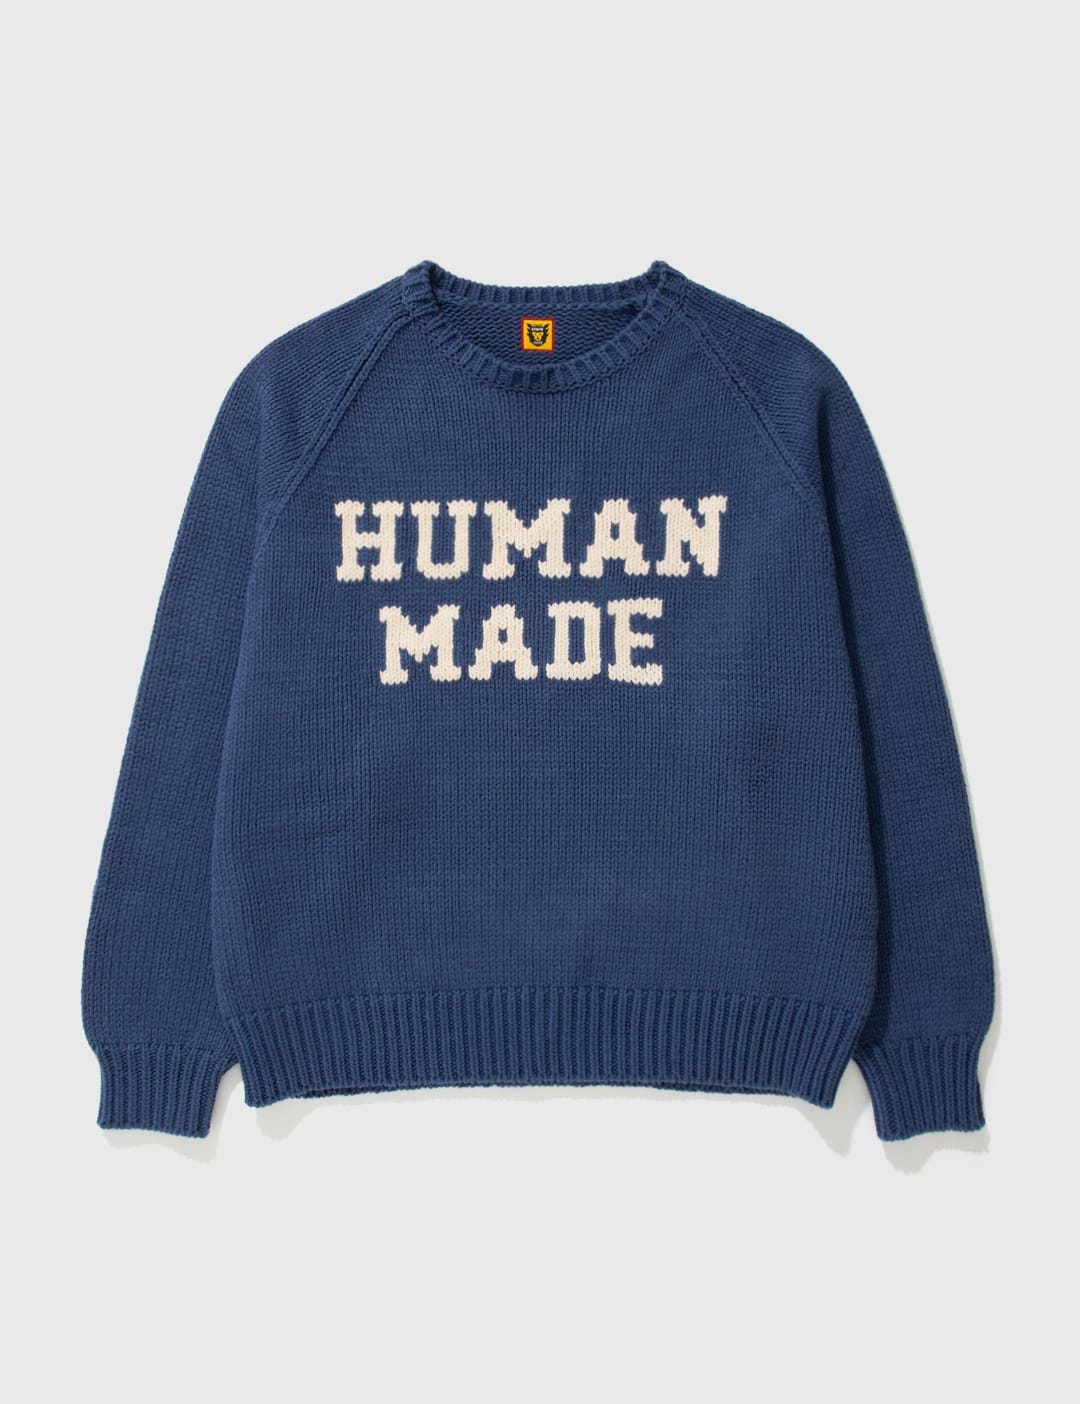 human made ニット